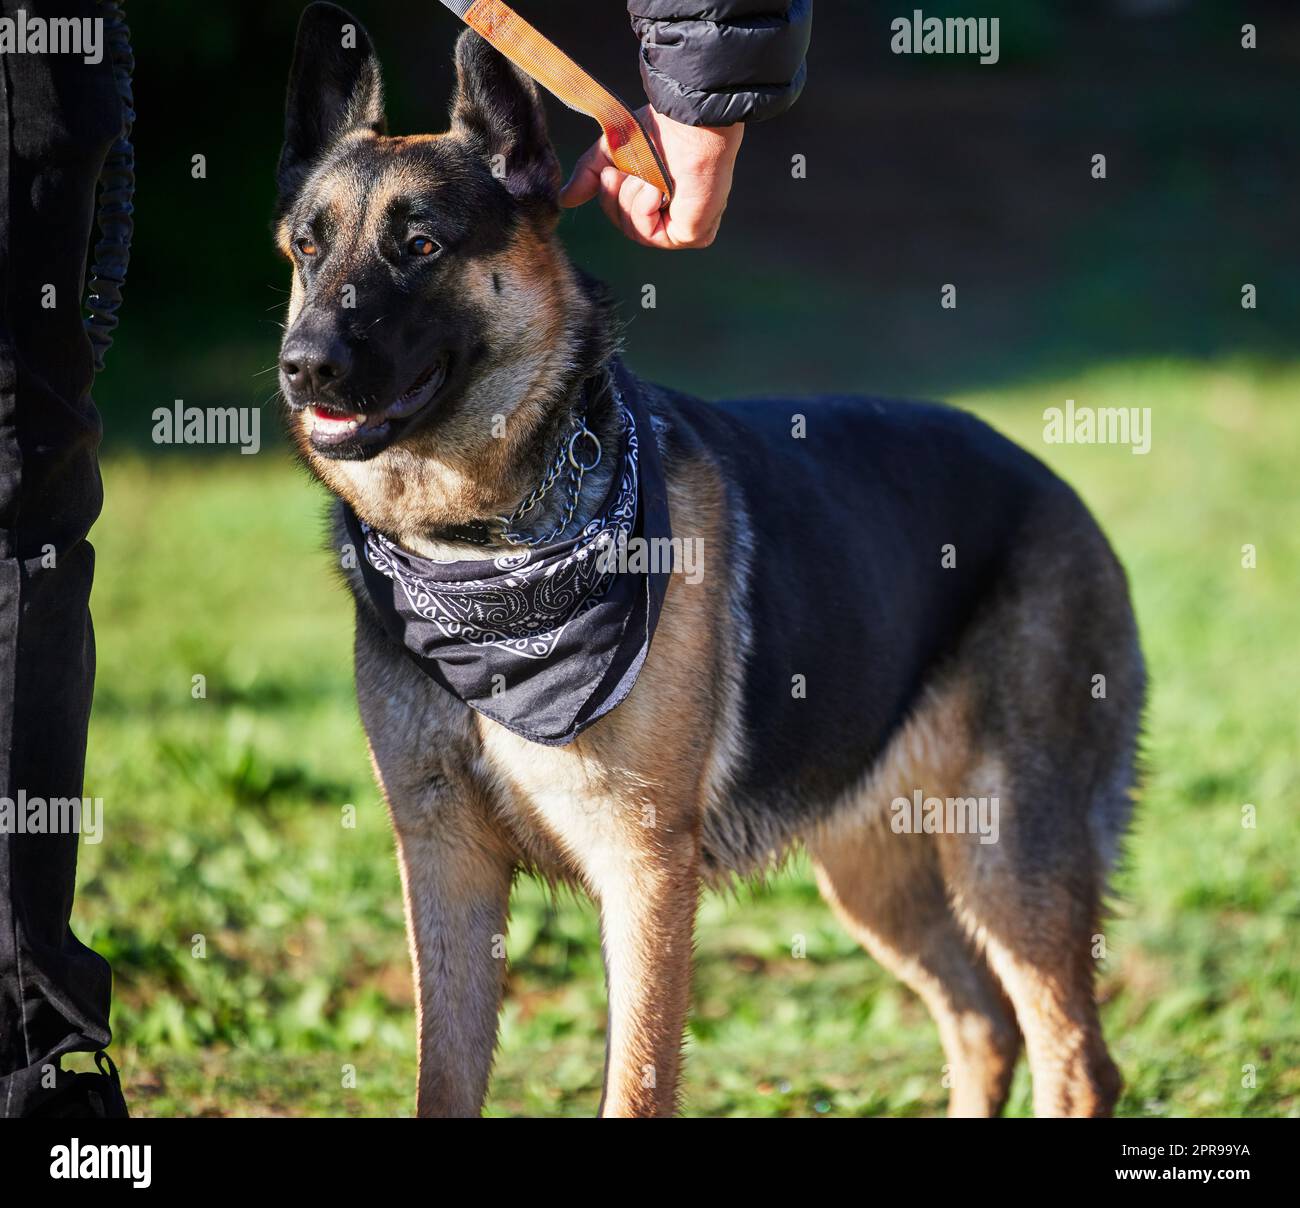 Le lunghe passeggiate sono molto migliori con il vostro cane, un adorabile pastore tedesco addestrato dal suo proprietario nel parco. Foto Stock